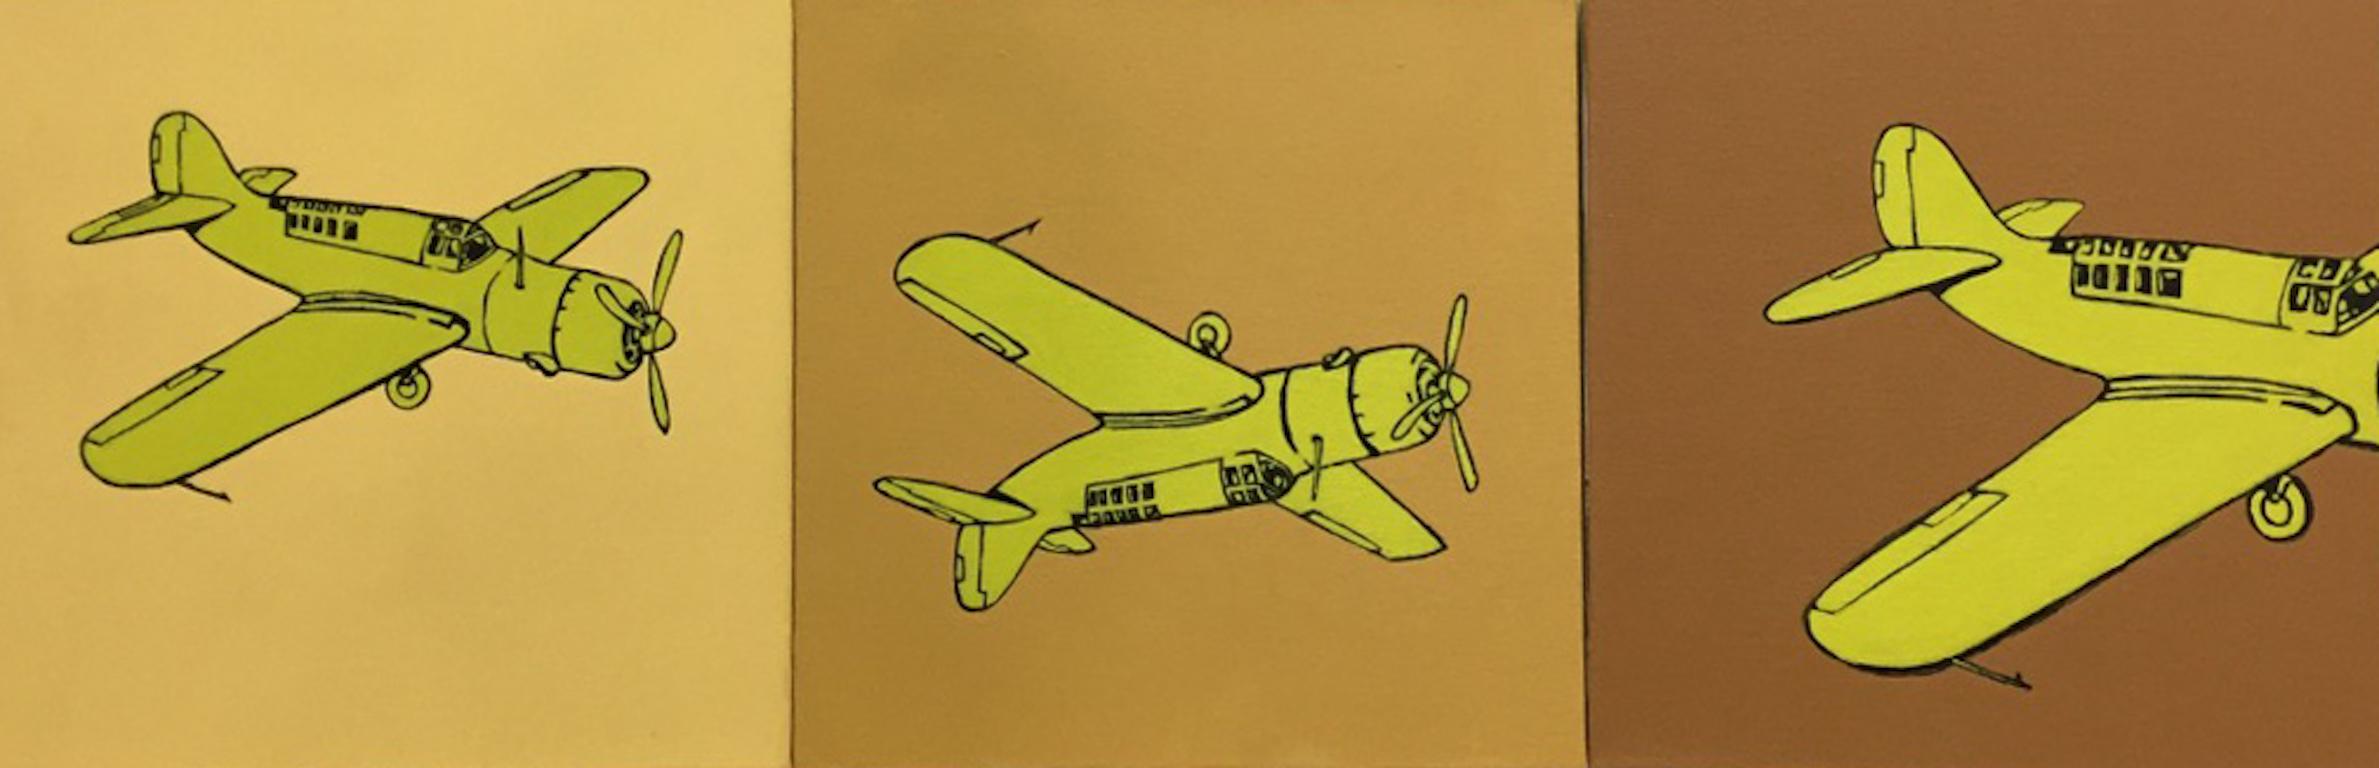 Airplane, gelbes Triptychon, Pop-Art-Stil